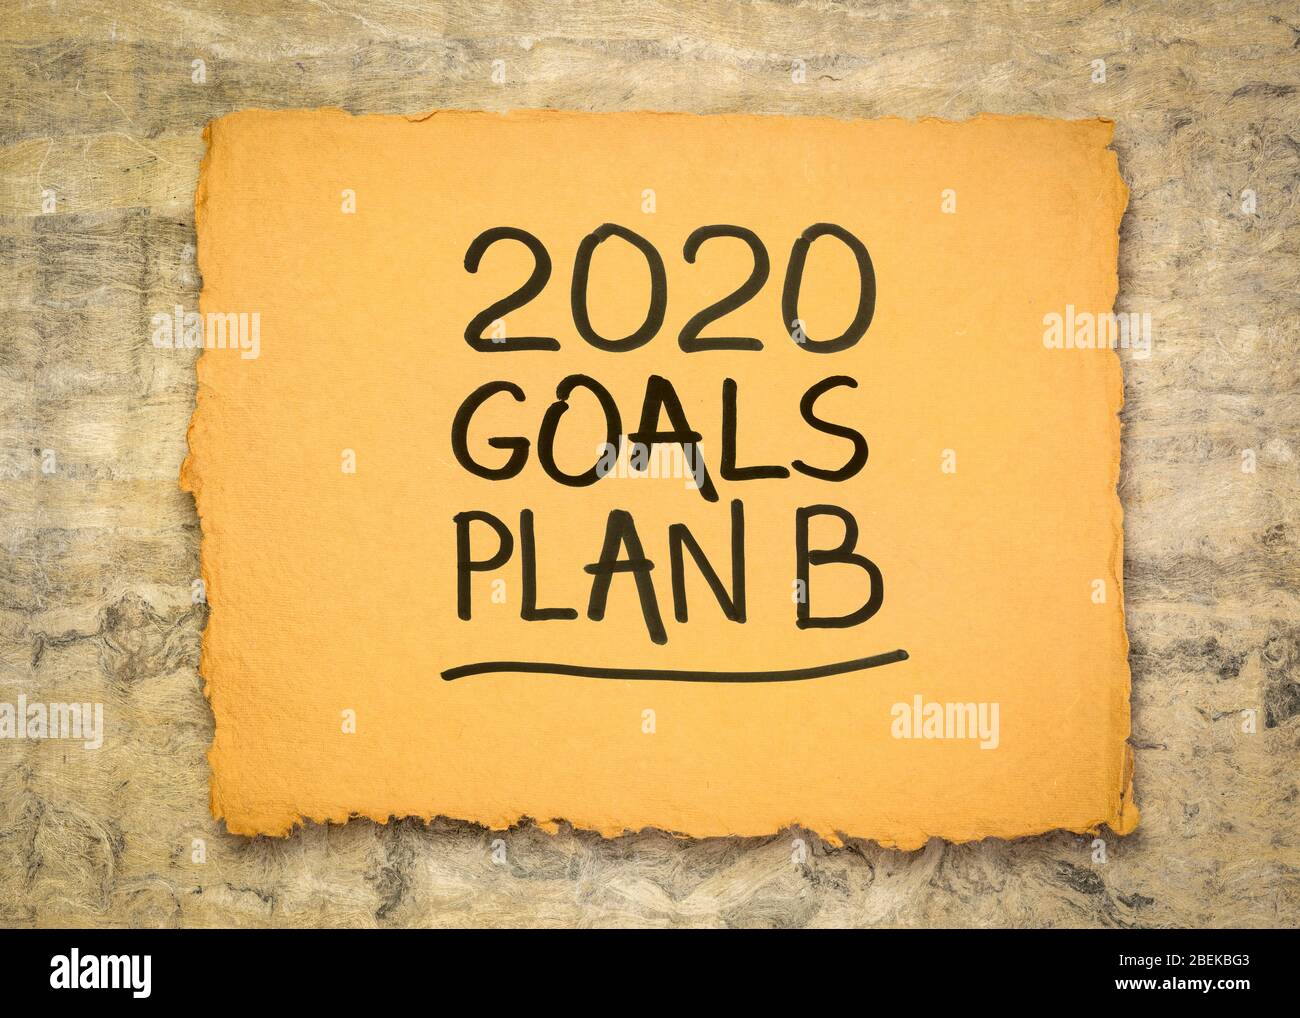 Objectifs 2020 plan B - changement des plans d'affaires et personnels pour la pandémie de coronavirus 2020 et la récession du marché, écriture manuscrite sur un papier rugueux fait à la main Banque D'Images